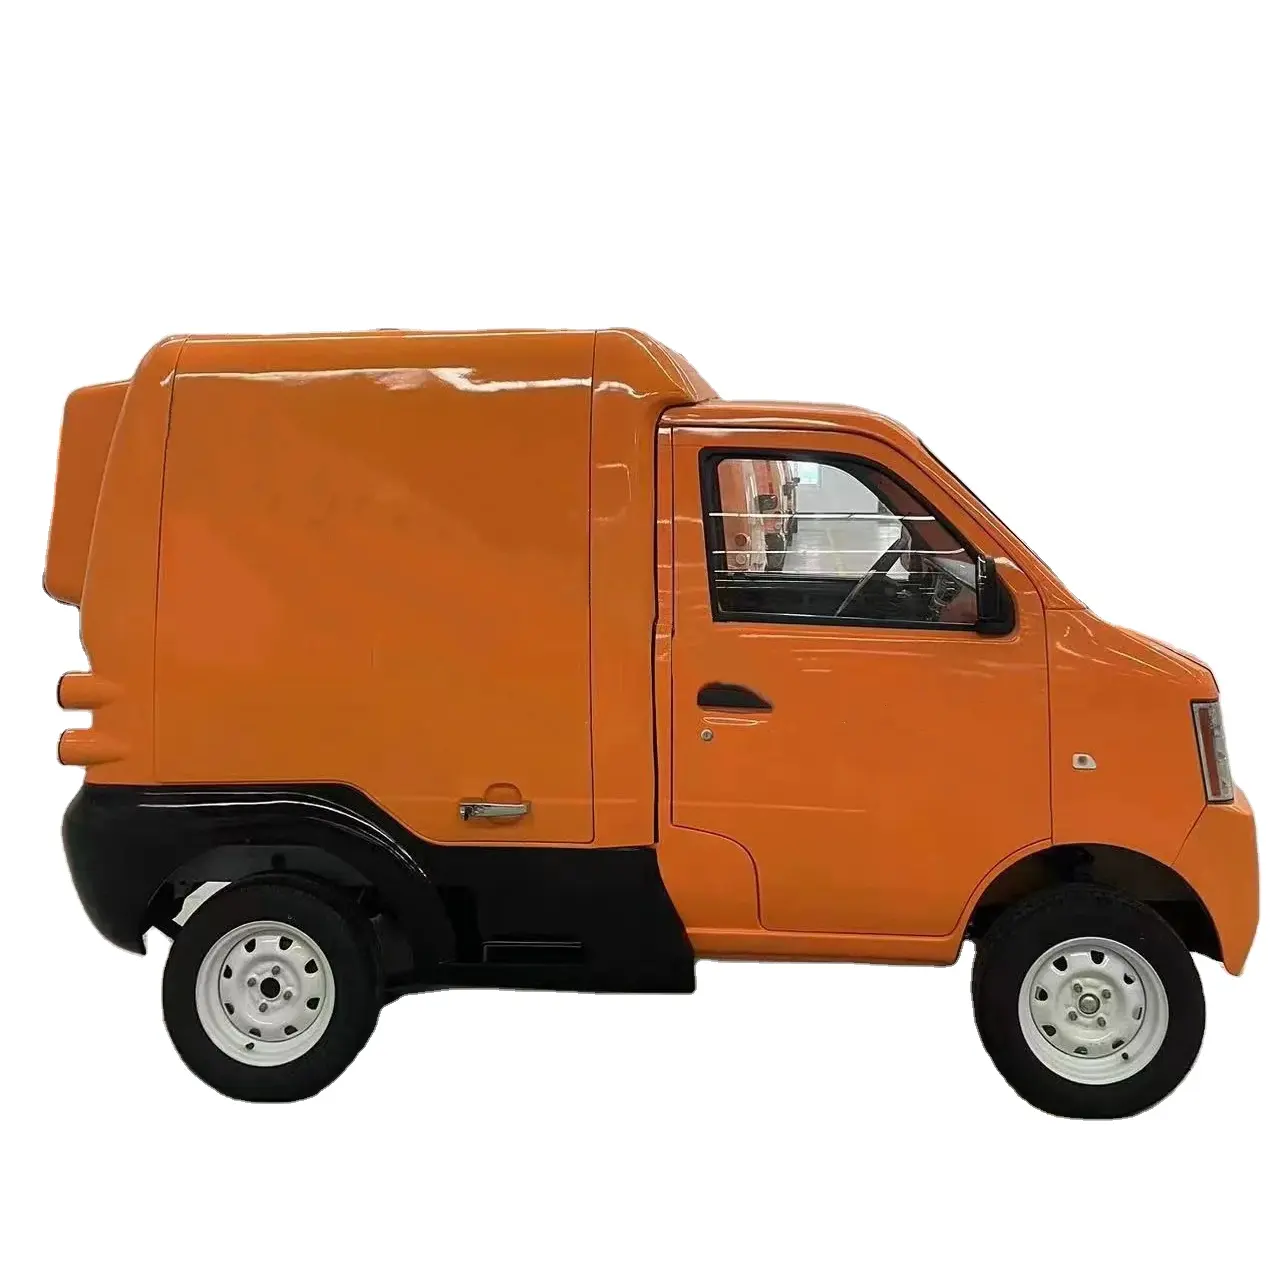 Ev van truck voiture électrique voiture de transport de nourriture voiture thermique livraison de nourriture chaude et froide voiture commerciale électrique 96v 10kw moteur à courant alternatif